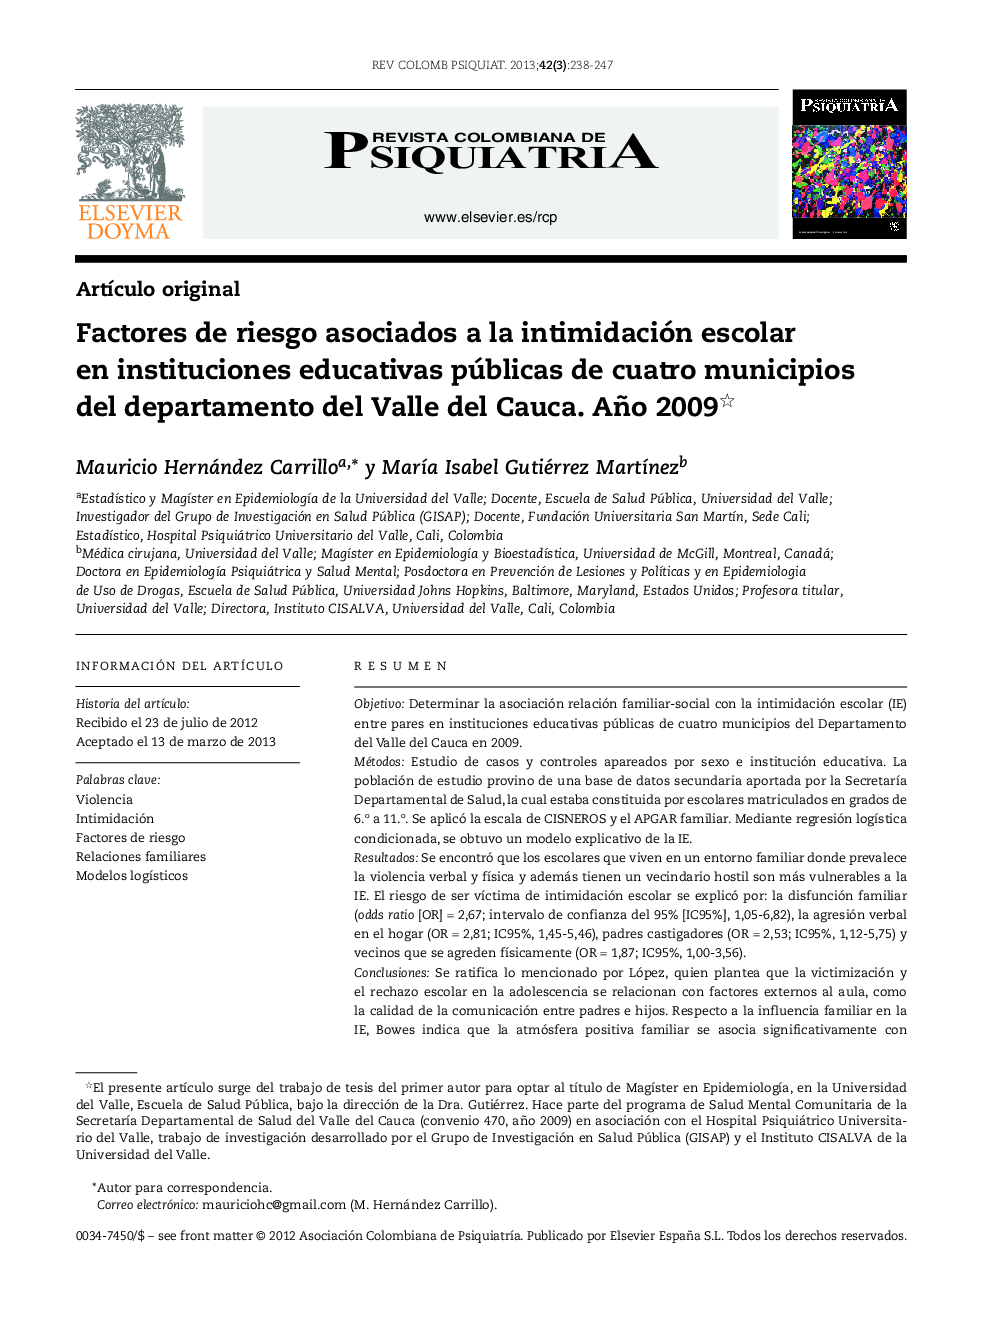 Factores de riesgo asociados a la intimidación escolar en instituciones educativas públicas de cuatro municipios del departamento del Valle del Cauca. Año 2009